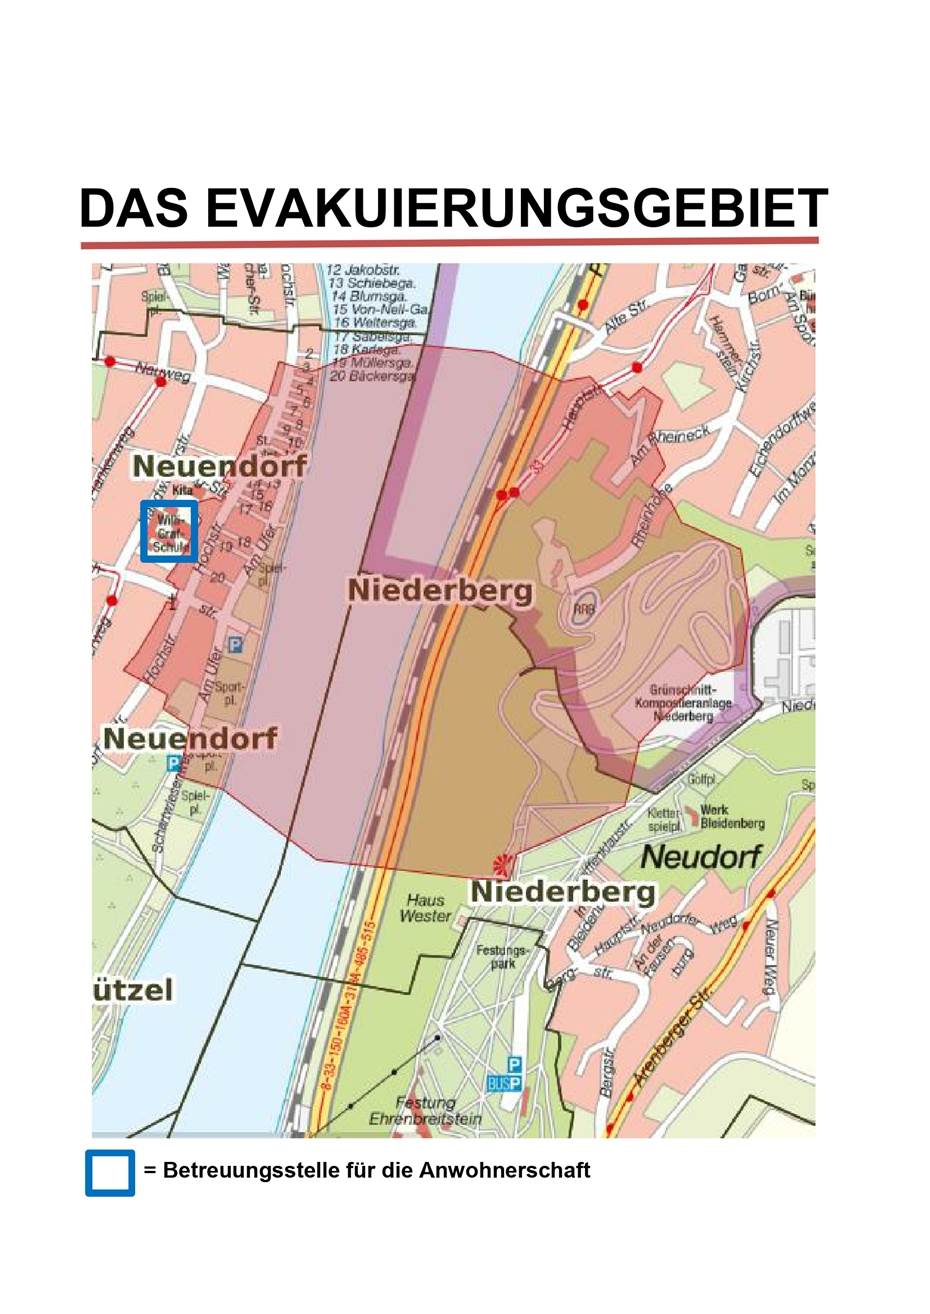 Bombenfund im Rhein: Evakuierung in Neuendorf notwendig